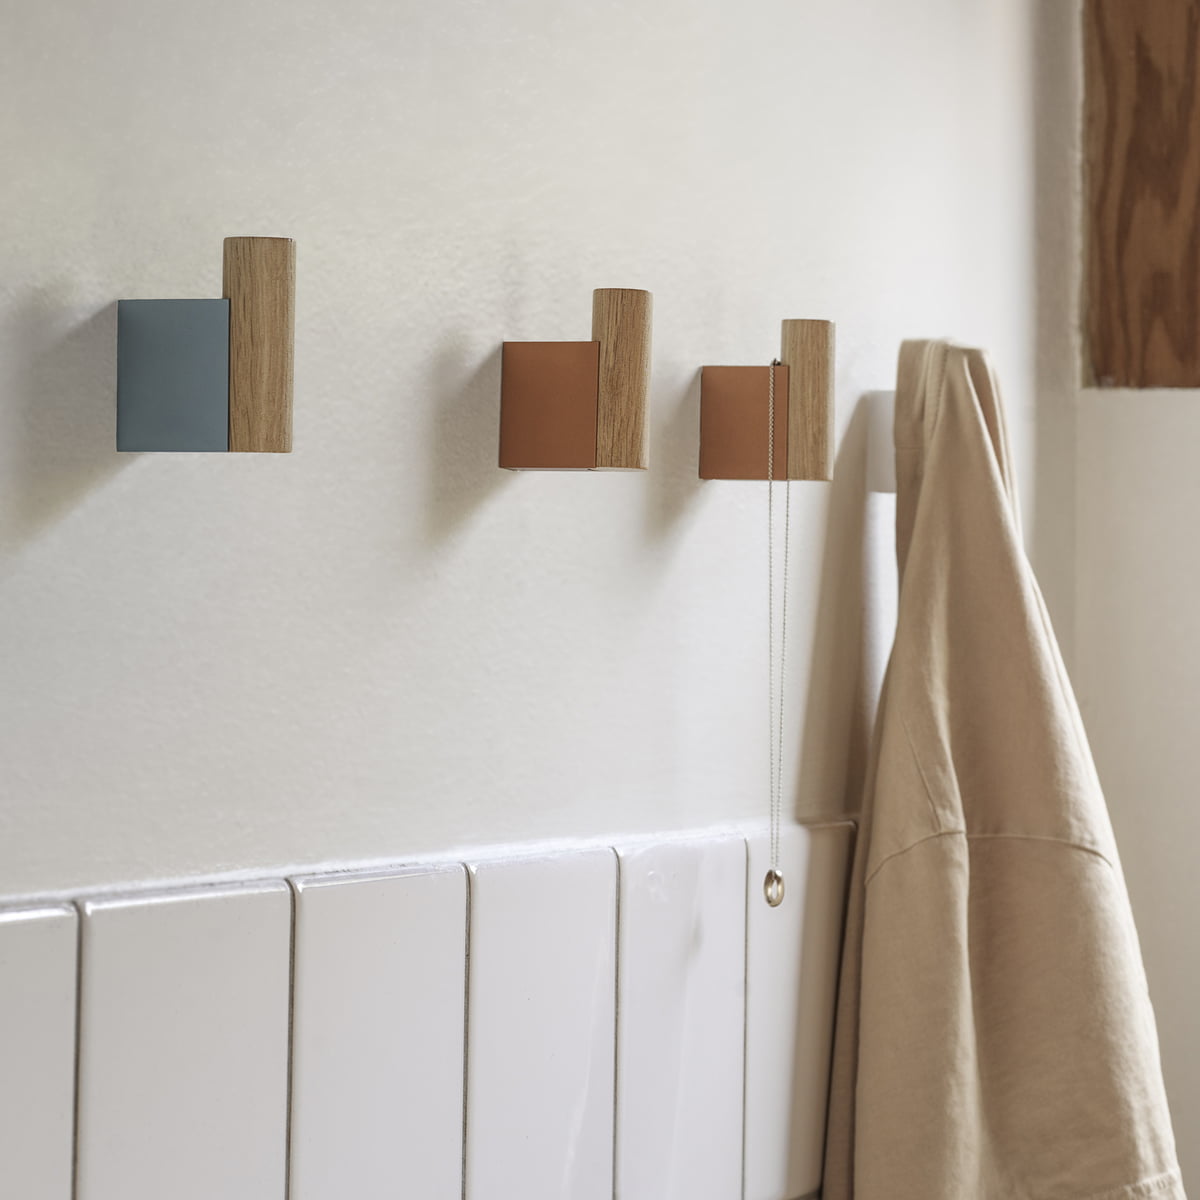 Moebe - Wooden wall hooks